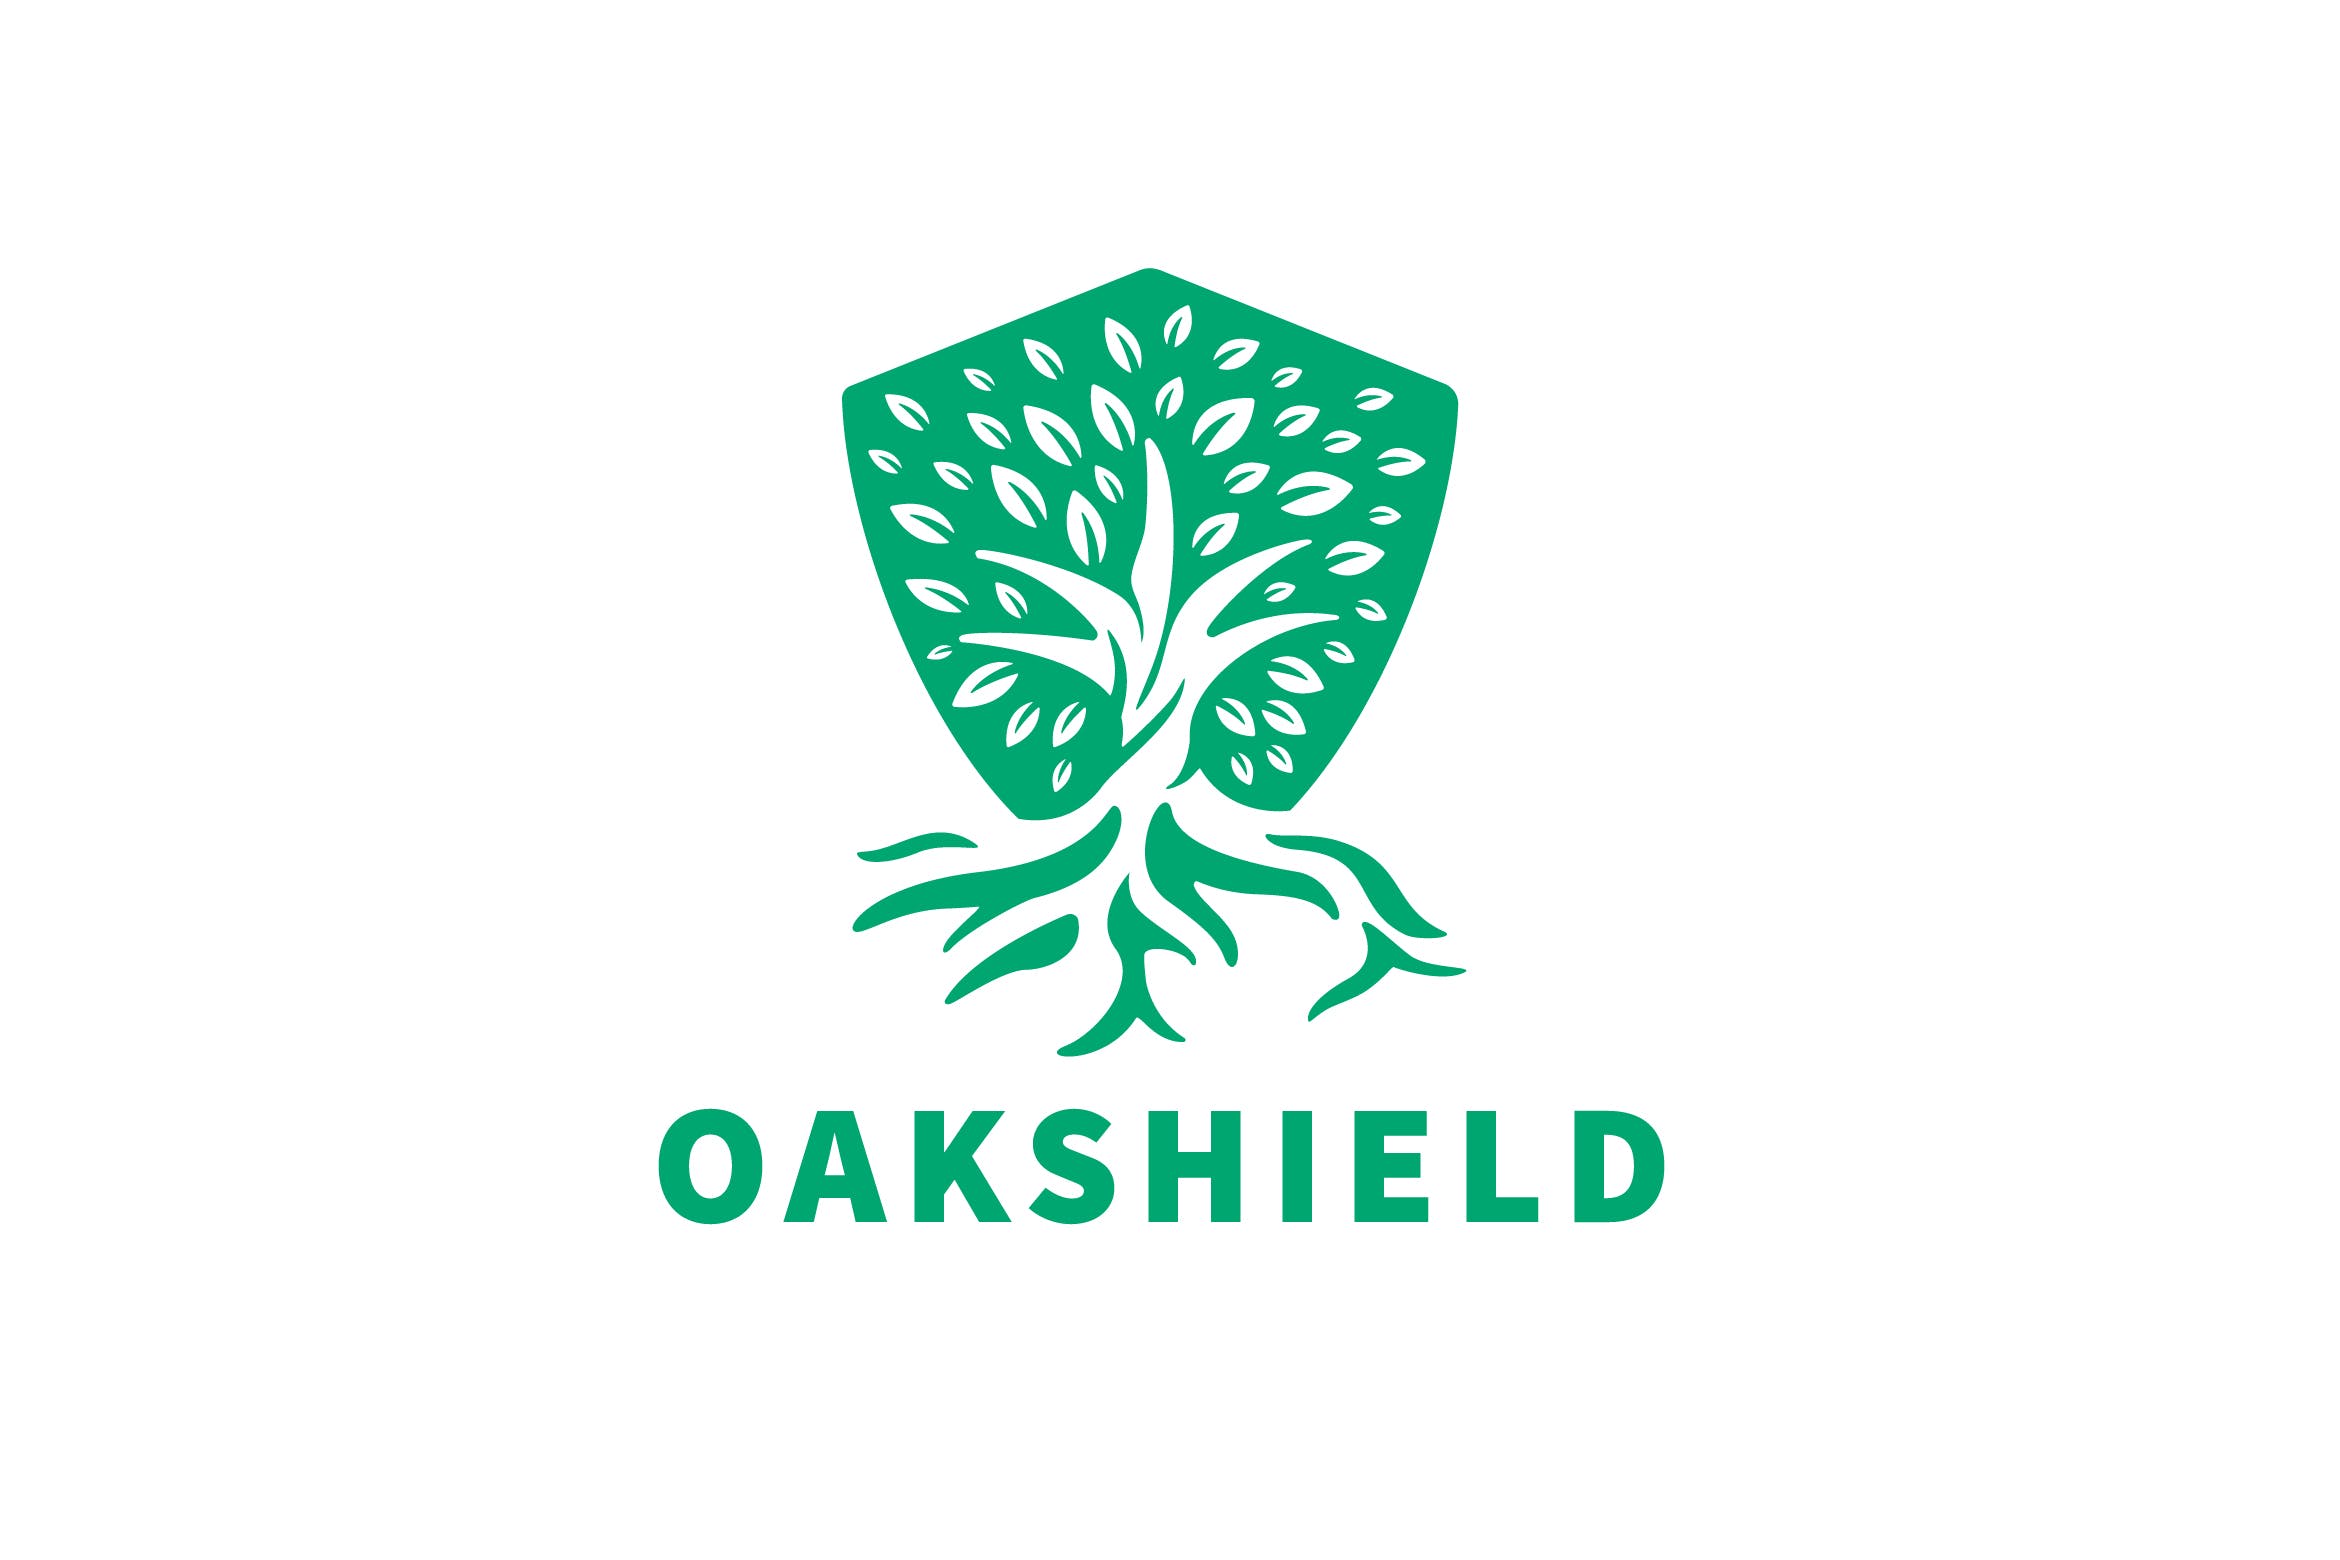 负空间设计风格橡木盾几何图形Logo设计蚂蚁素材精选模板 Oak Shield Negative Space Logo插图